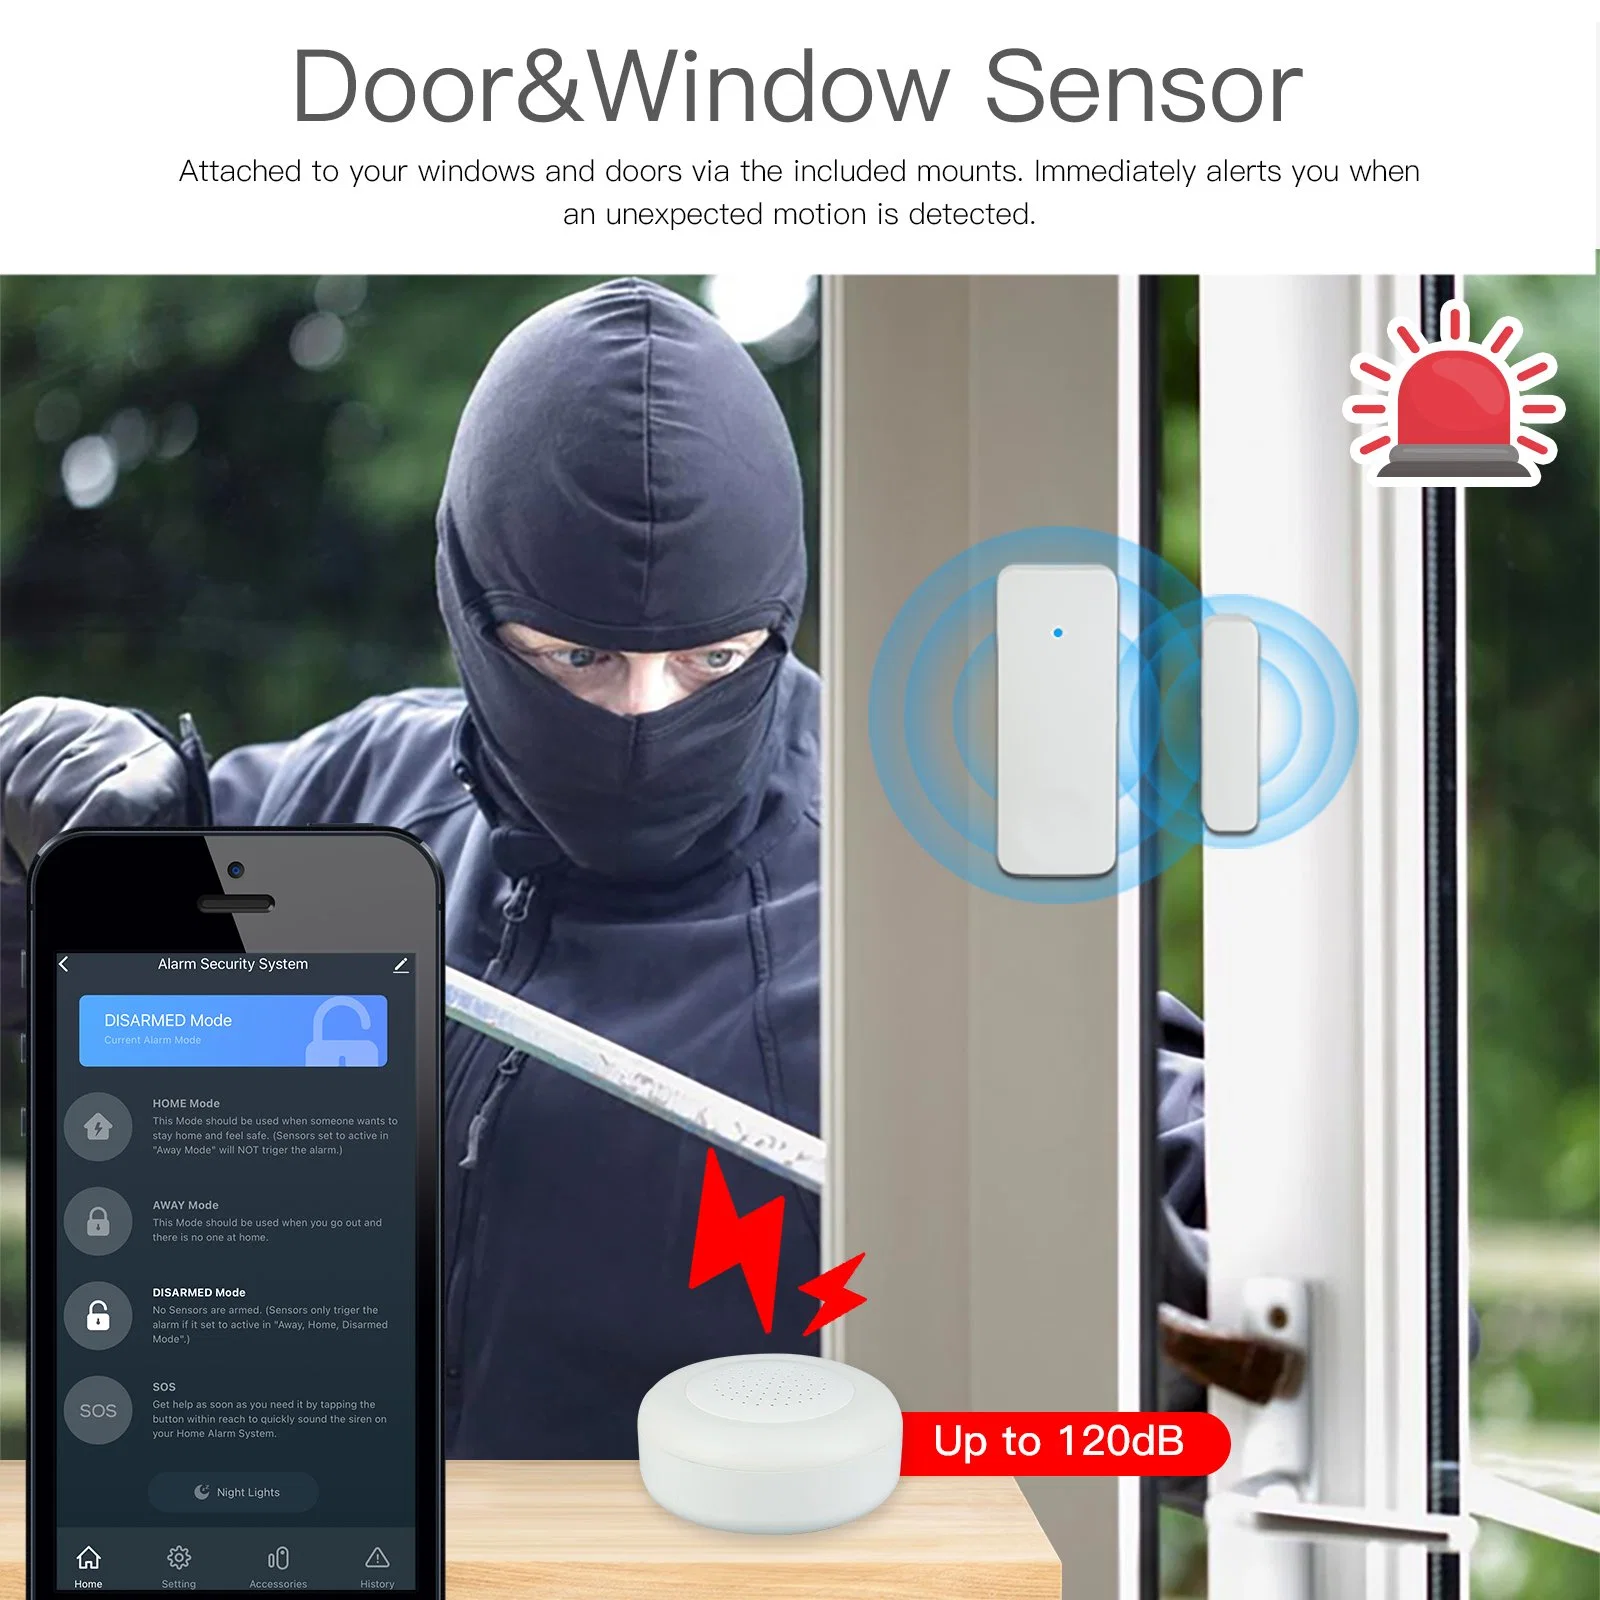 دعم نظام الإنذار الذكي WiFi Smart Alarm لمجموعة الأمان المنزلي ضد السرقة صفحة Google الرئيسية